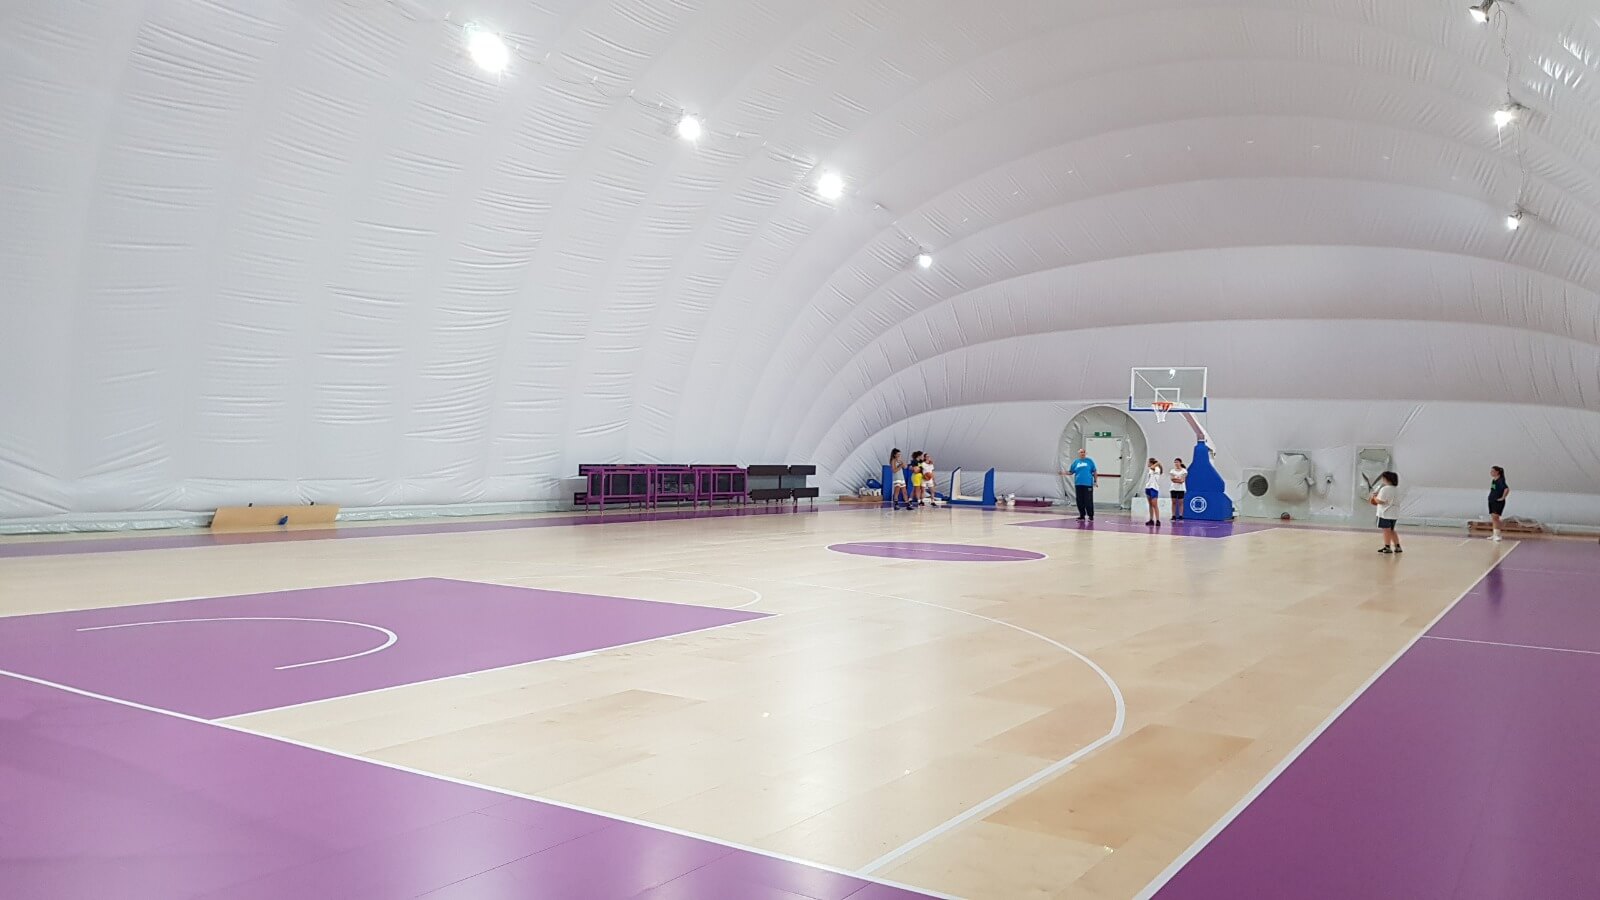 Centro-sportivo-ardita-juventus-basket-genova-1